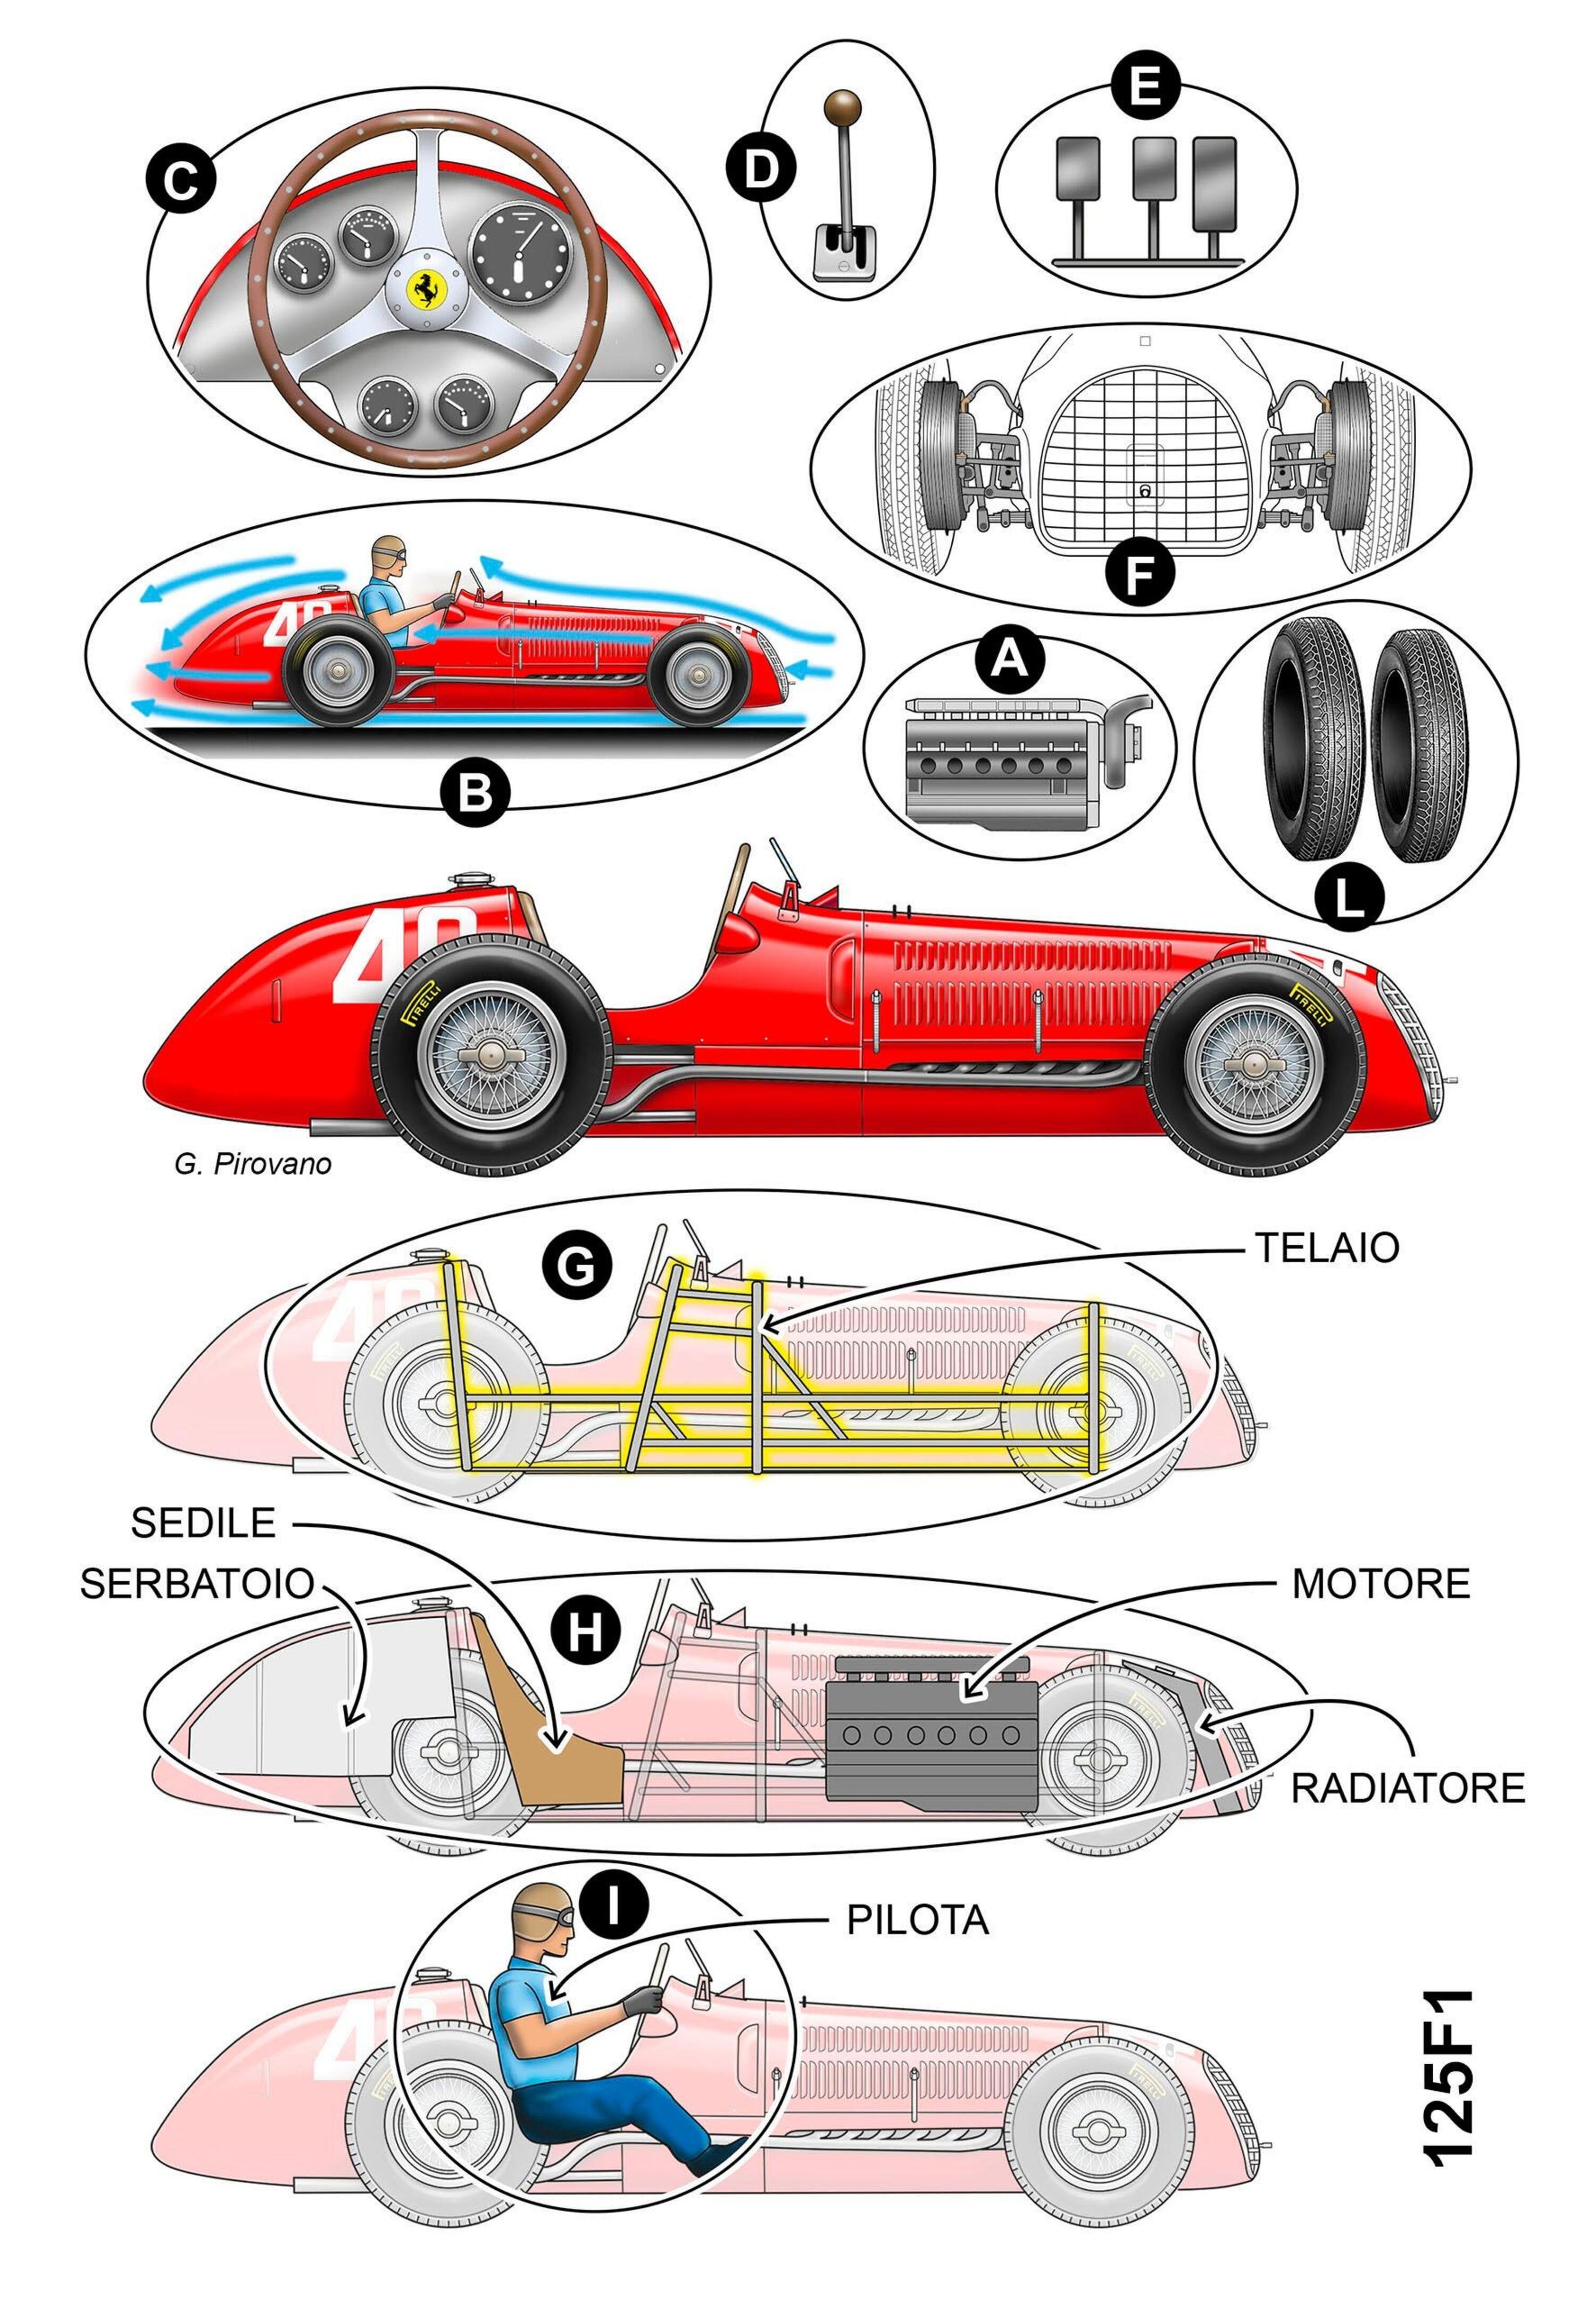 F1, 1000 GP Ferrari: 125 F1 e SF1000 a confronto